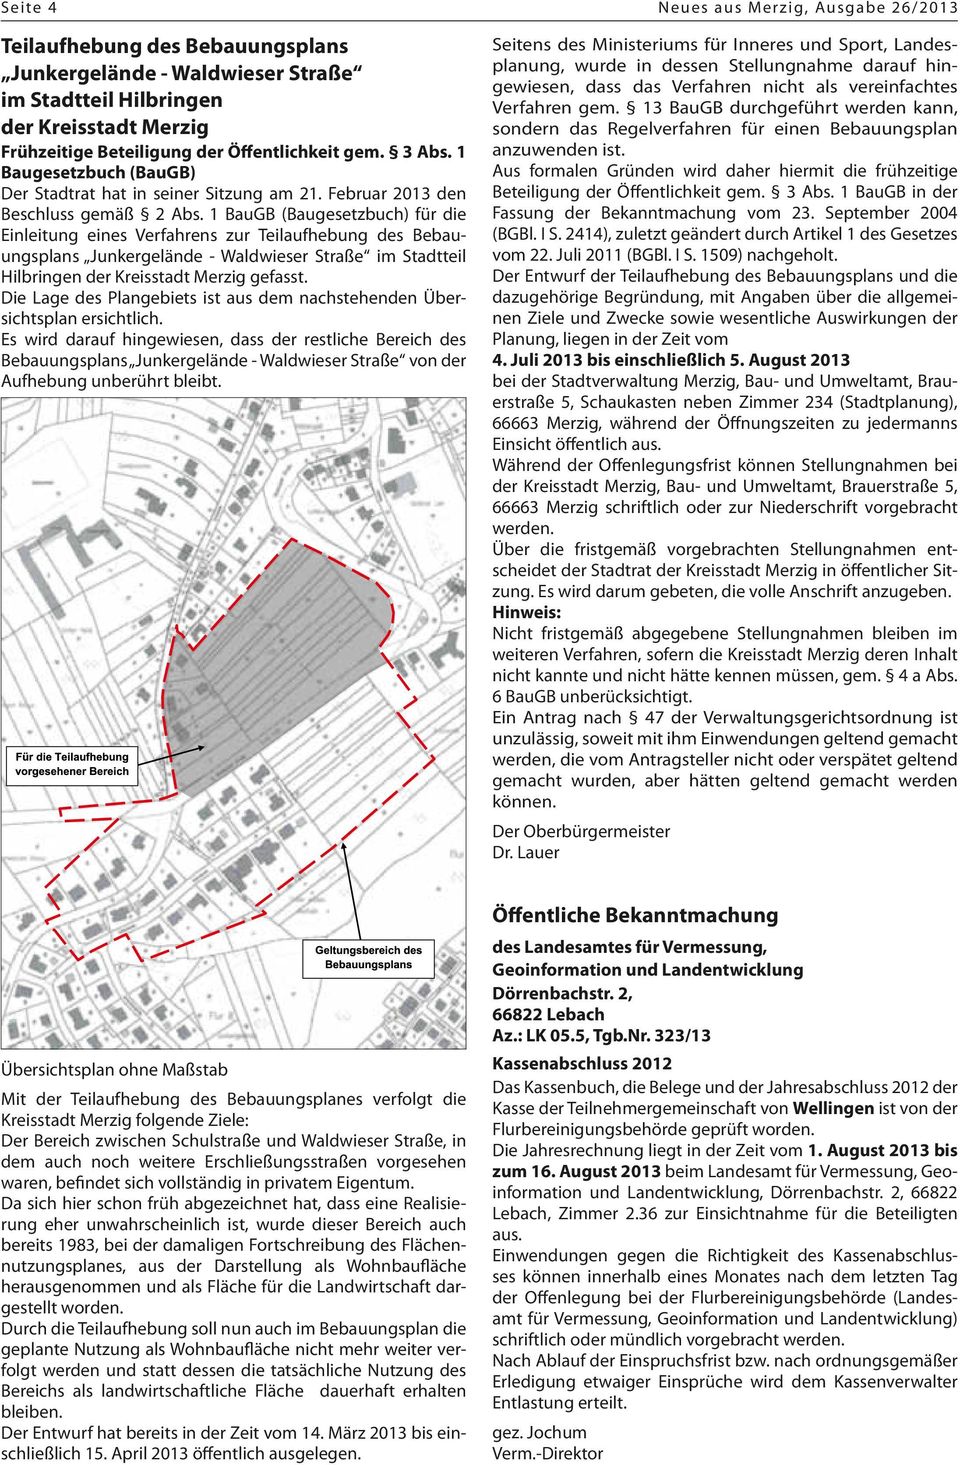 1 BauGB (Baugesetzbuch) für die Einleitung eines Verfahrens zur Teilaufhebung des Bebauungsplans Junkergelände - Waldwieser Straße im Stadtteil Hilbringen der Kreisstadt Merzig gefasst.